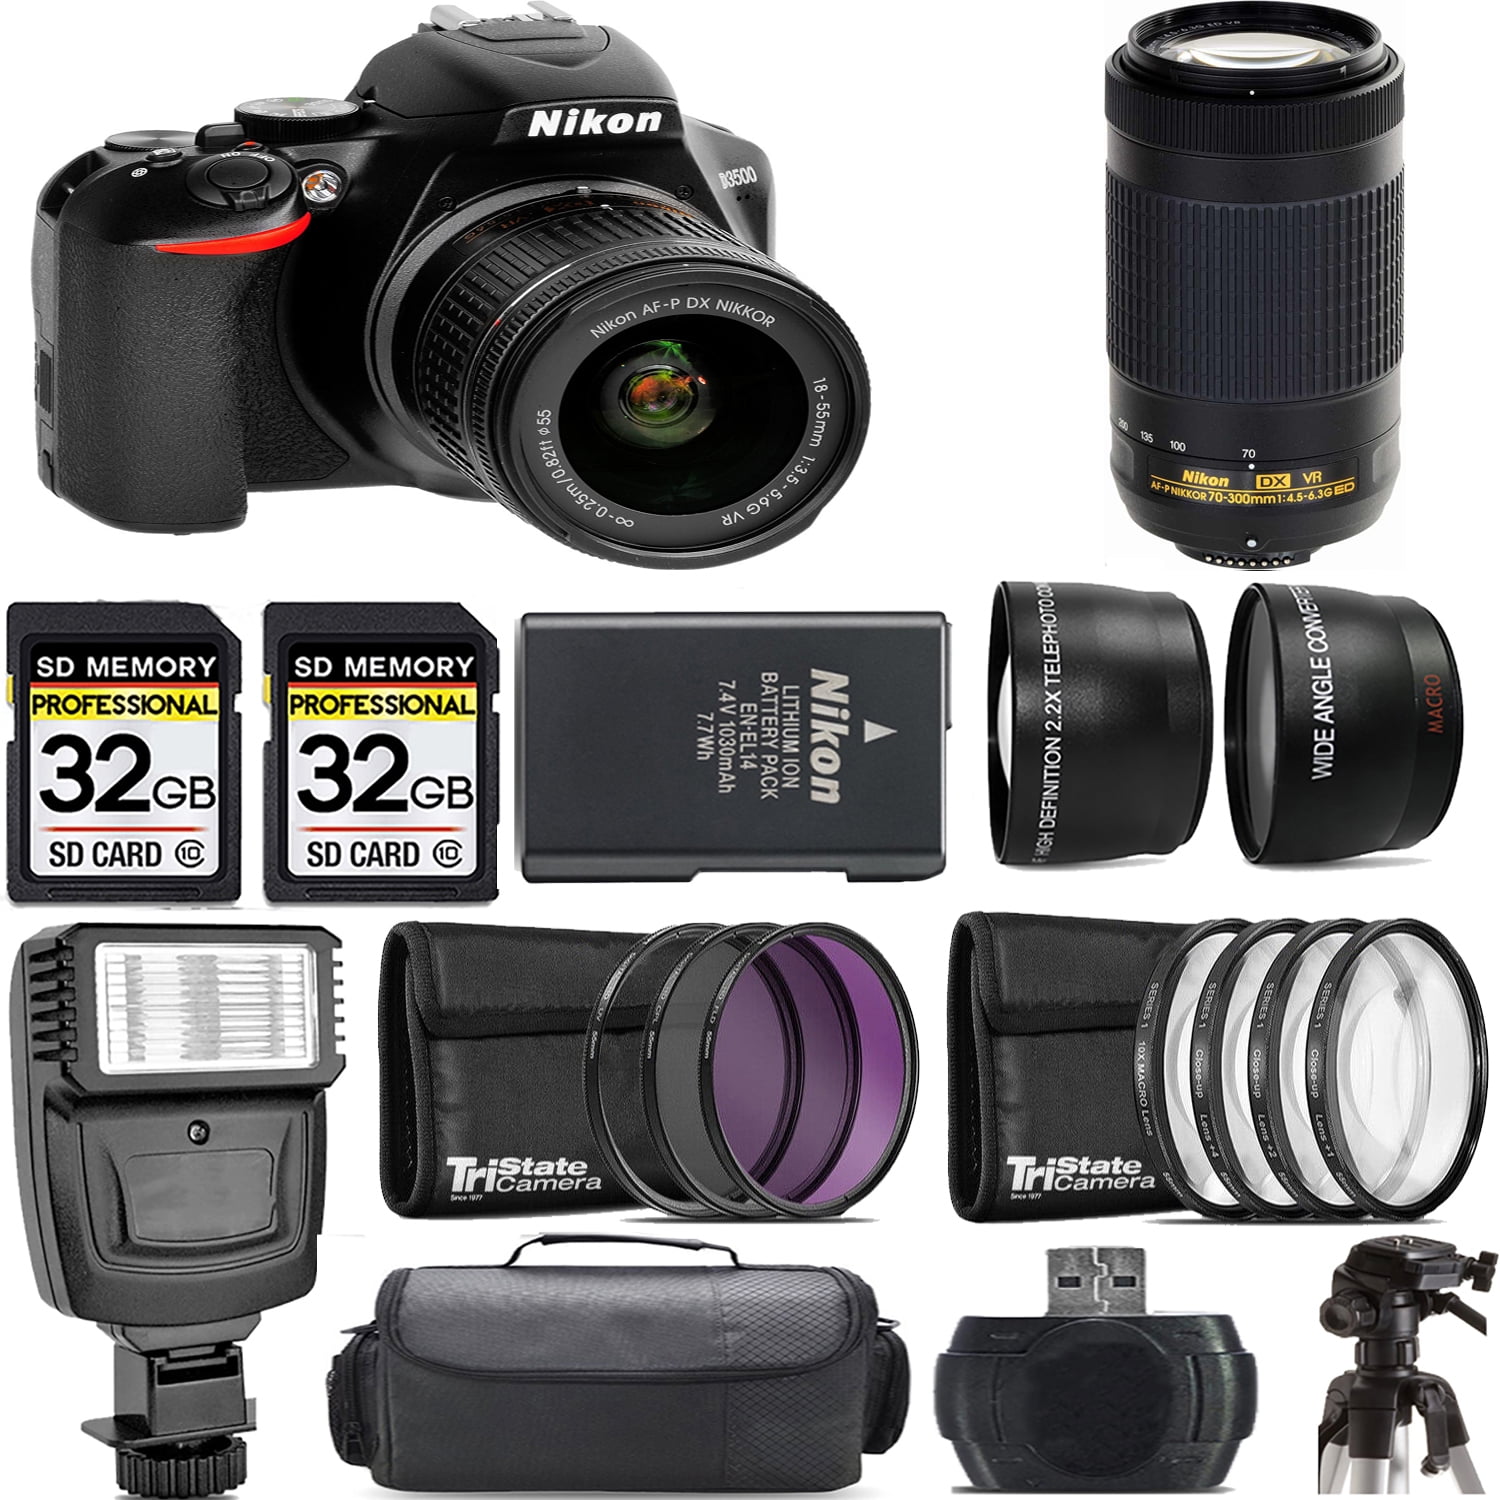 Nikon D3500 DSLR Camera with 18-55mm Lens +70-300mm VR Lens +Flash